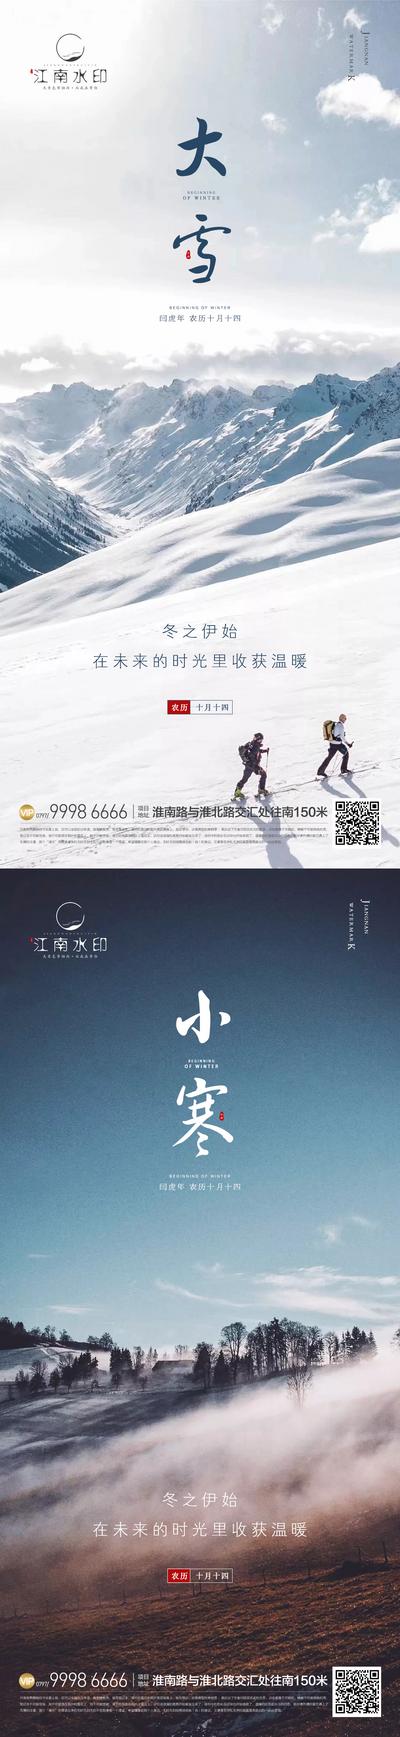 南门网 海报 二十四节气 小寒 大雪 景色 冬季